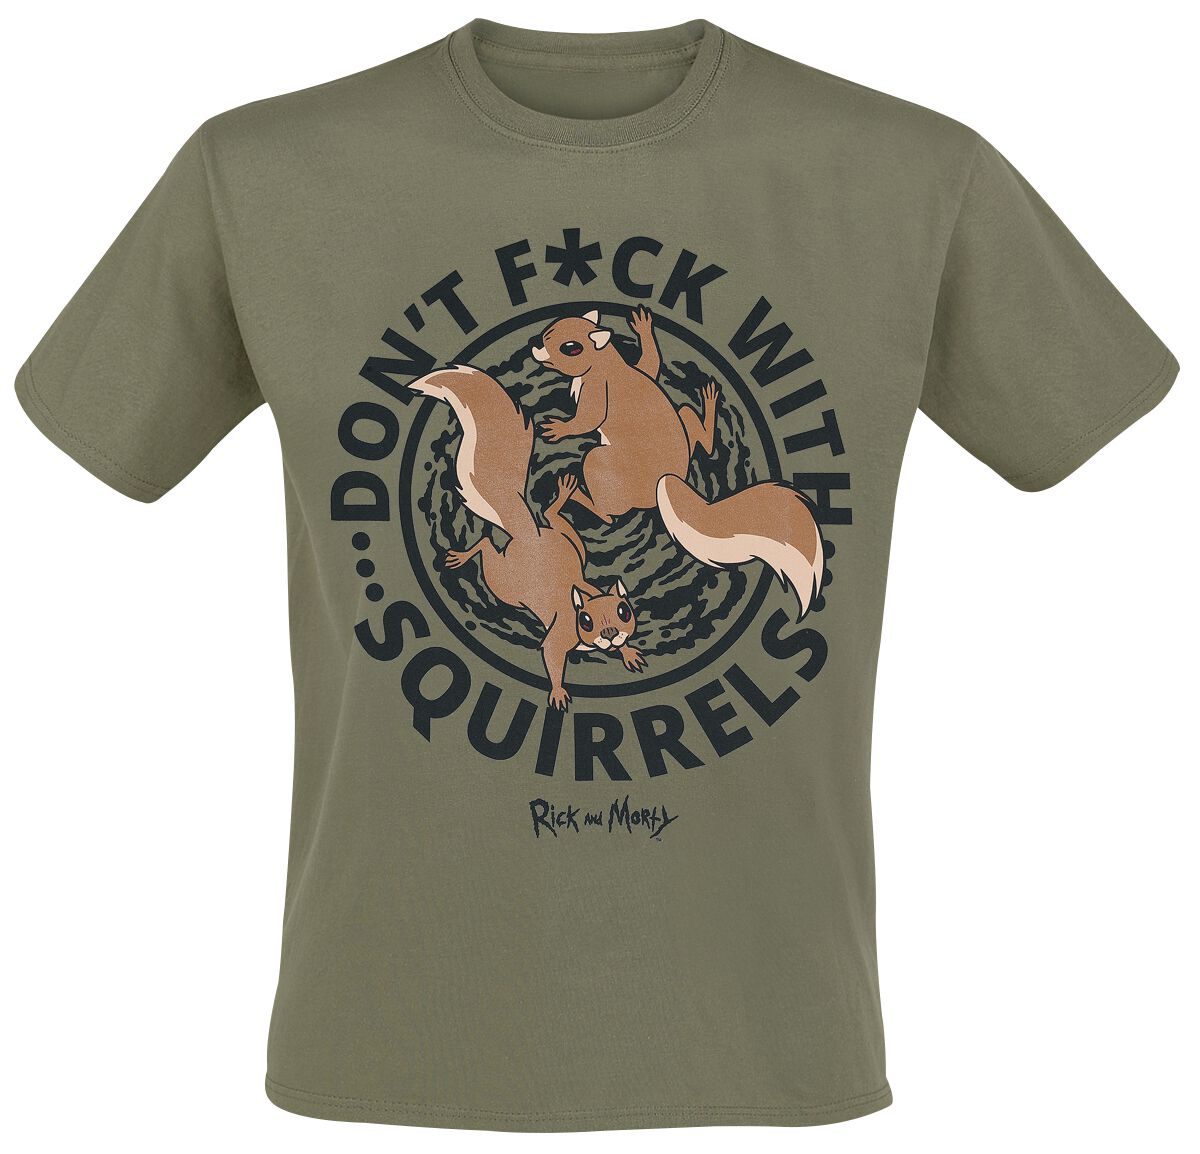 Rick And Morty T-Shirt - Don't F*ck With Squirrels - S bis XXL - für Männer - Größe M - khaki  - EMP exklusives Merchandise! von Rick And Morty